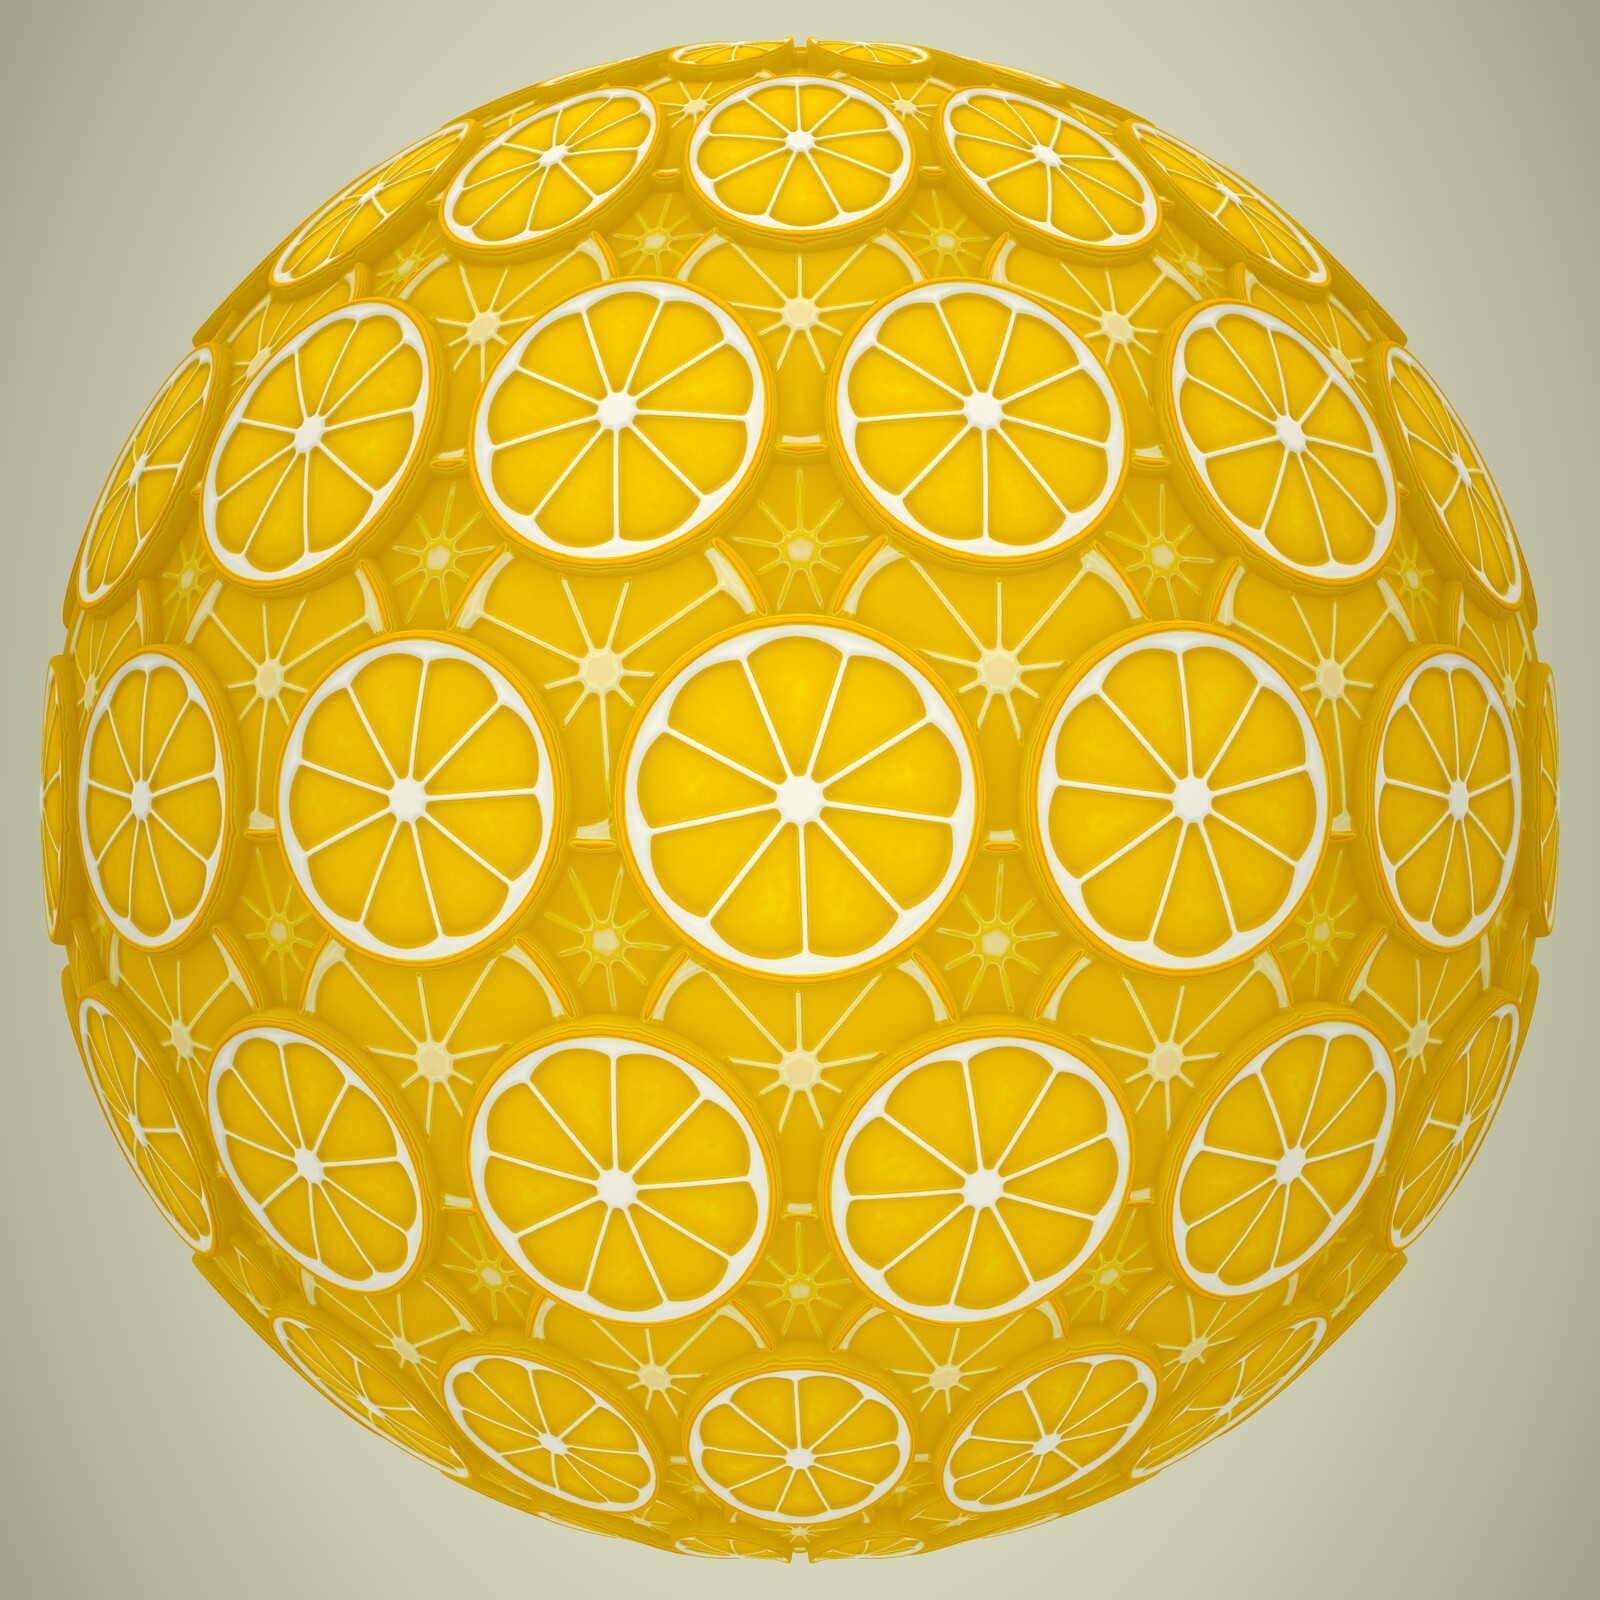 Day 3: Fruit - Lemon